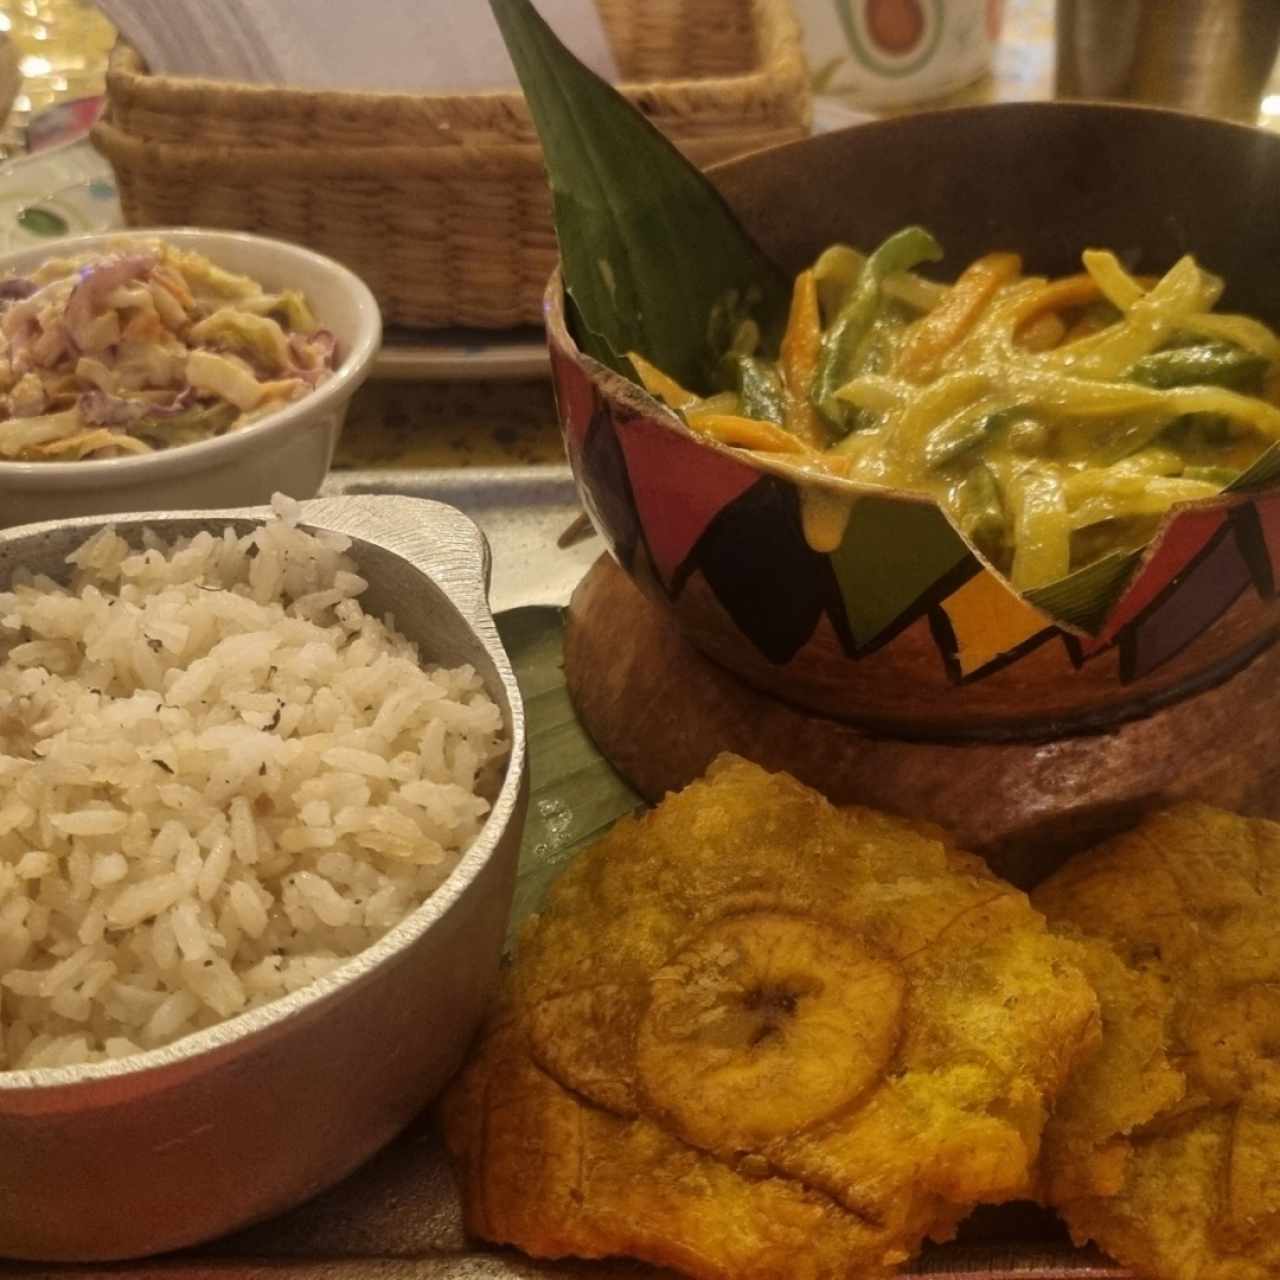 Vegetales con coco y curry, arroz con coco, patacones y ensalada